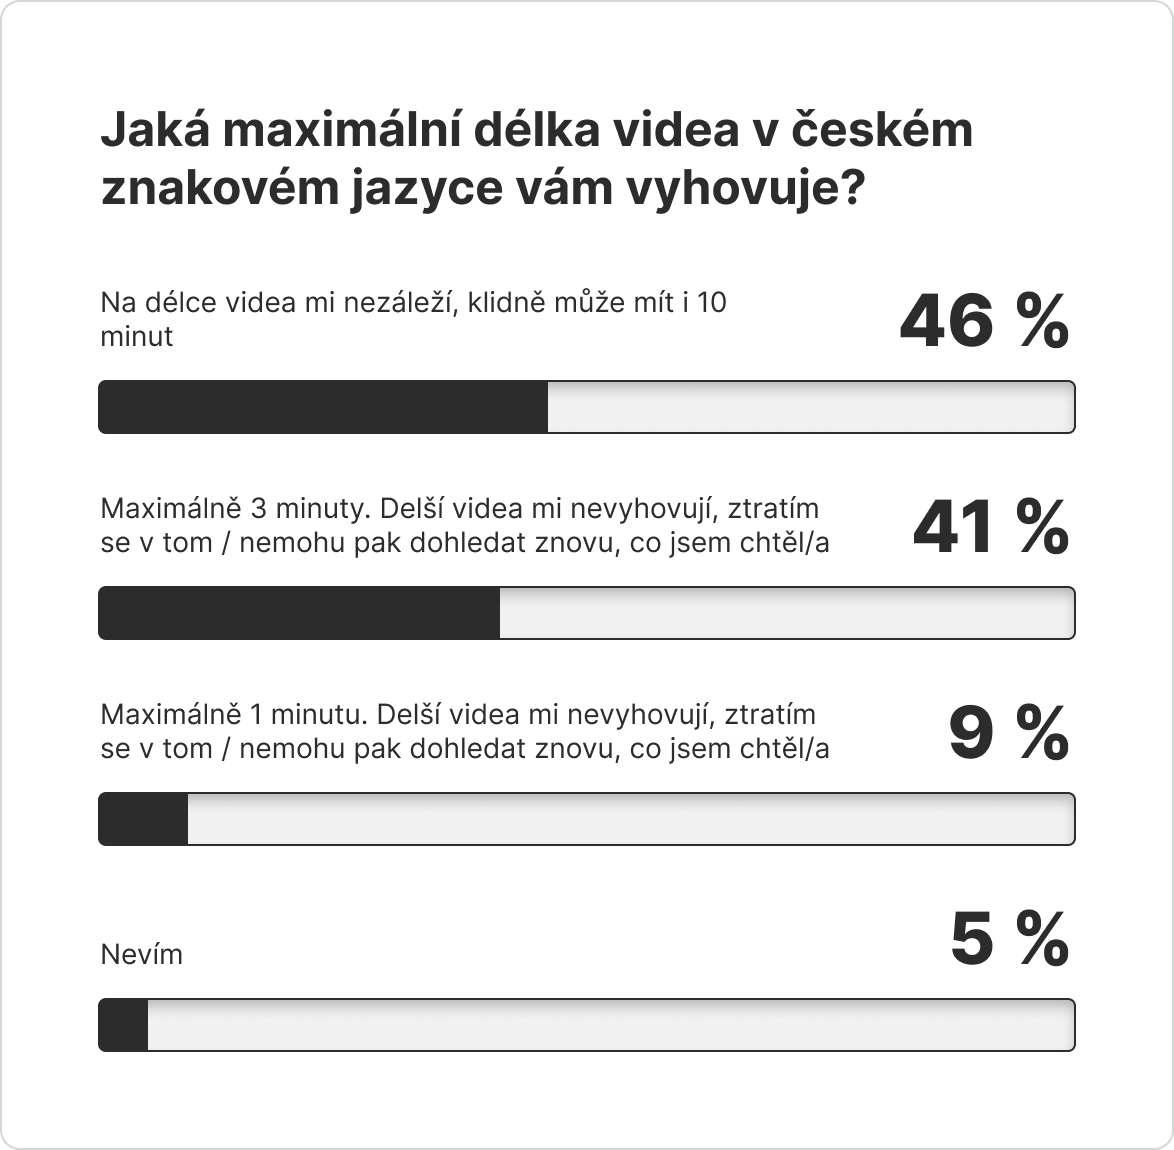 Infografika s výsledky dotazníku pro otázku: Jaká maximální délka videa v českém znakovém jazyce vám vyhovuje? 46 % respondentů vybralo odpověď „Na délce videa mi nezáleží, klidně může mít i 10 minut“, 41 % vybralo odpověď „Maximálně 3 minuty. Delší videa mi nevyhovují, ztratím se v tom / nemohu pak dohledat znovu, co jsem chtěl/a“, 9 % vybralo odpověď „Maximálně 1 minutu. Delší videa mi nevyhovují, ztratím se v tom / nemohu pak dohledat znovu, co jsem chtěl/a“, 5 % vybralo „Nevím“.